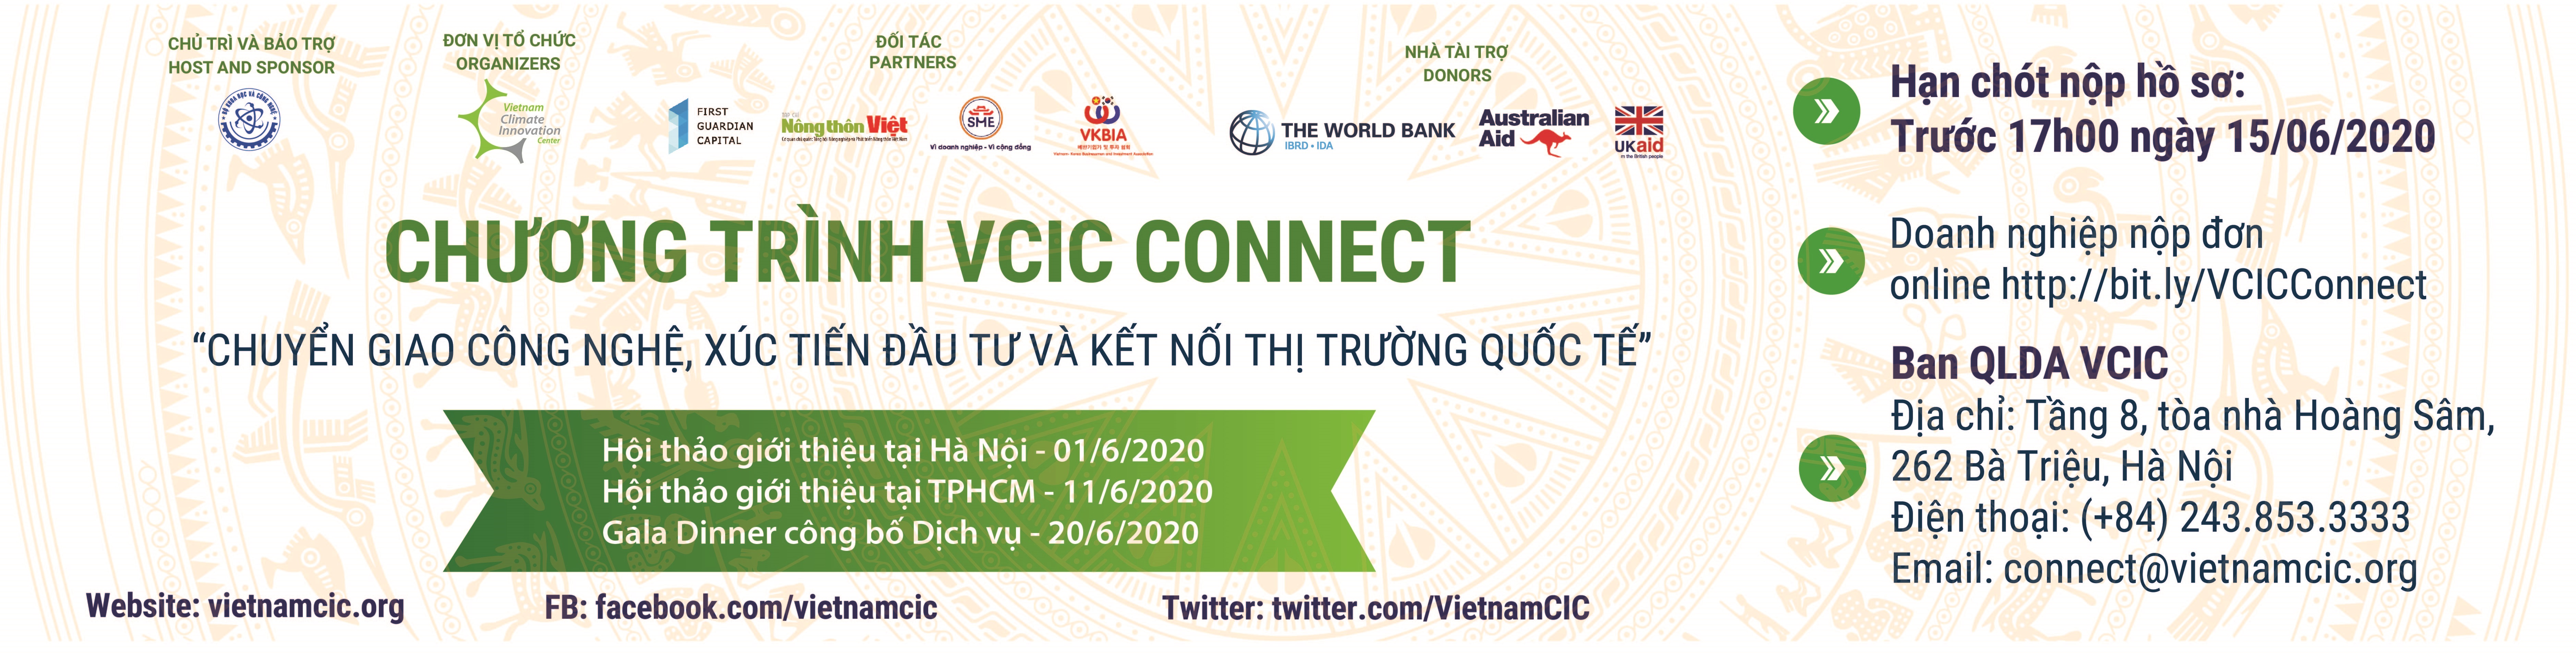 Chương trình VCIC Connect “Chuyển giao công nghệ, xúc tiến đầu tư và kết nối thị trường quốc tế”